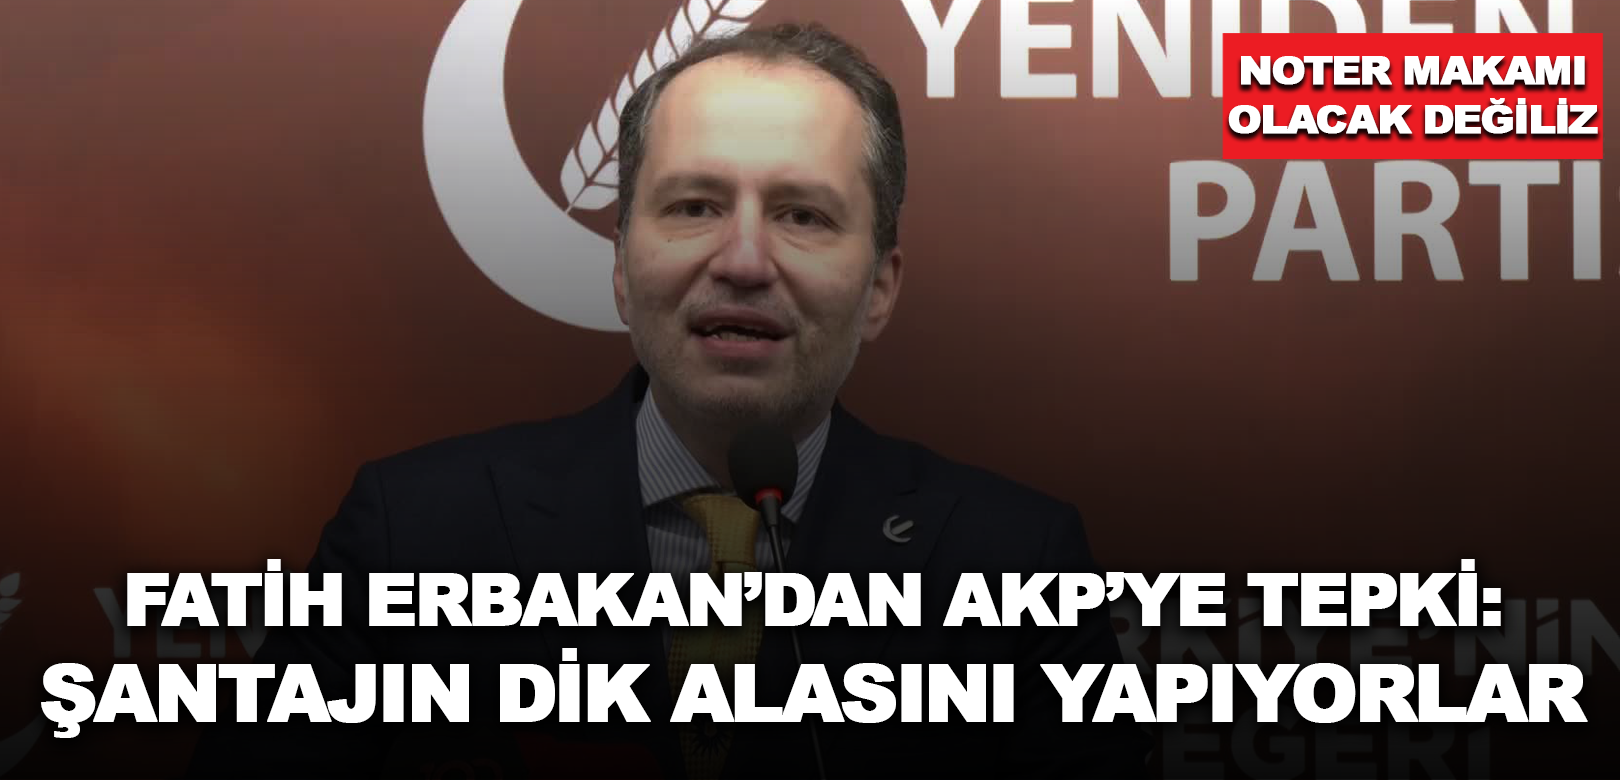 Fatih Erbakan'dan 'siyasi şantaj' ithamlarına yanıt: 'Buna verirseniz CHP gelir' demek siyasi şantajın dik alasıdır